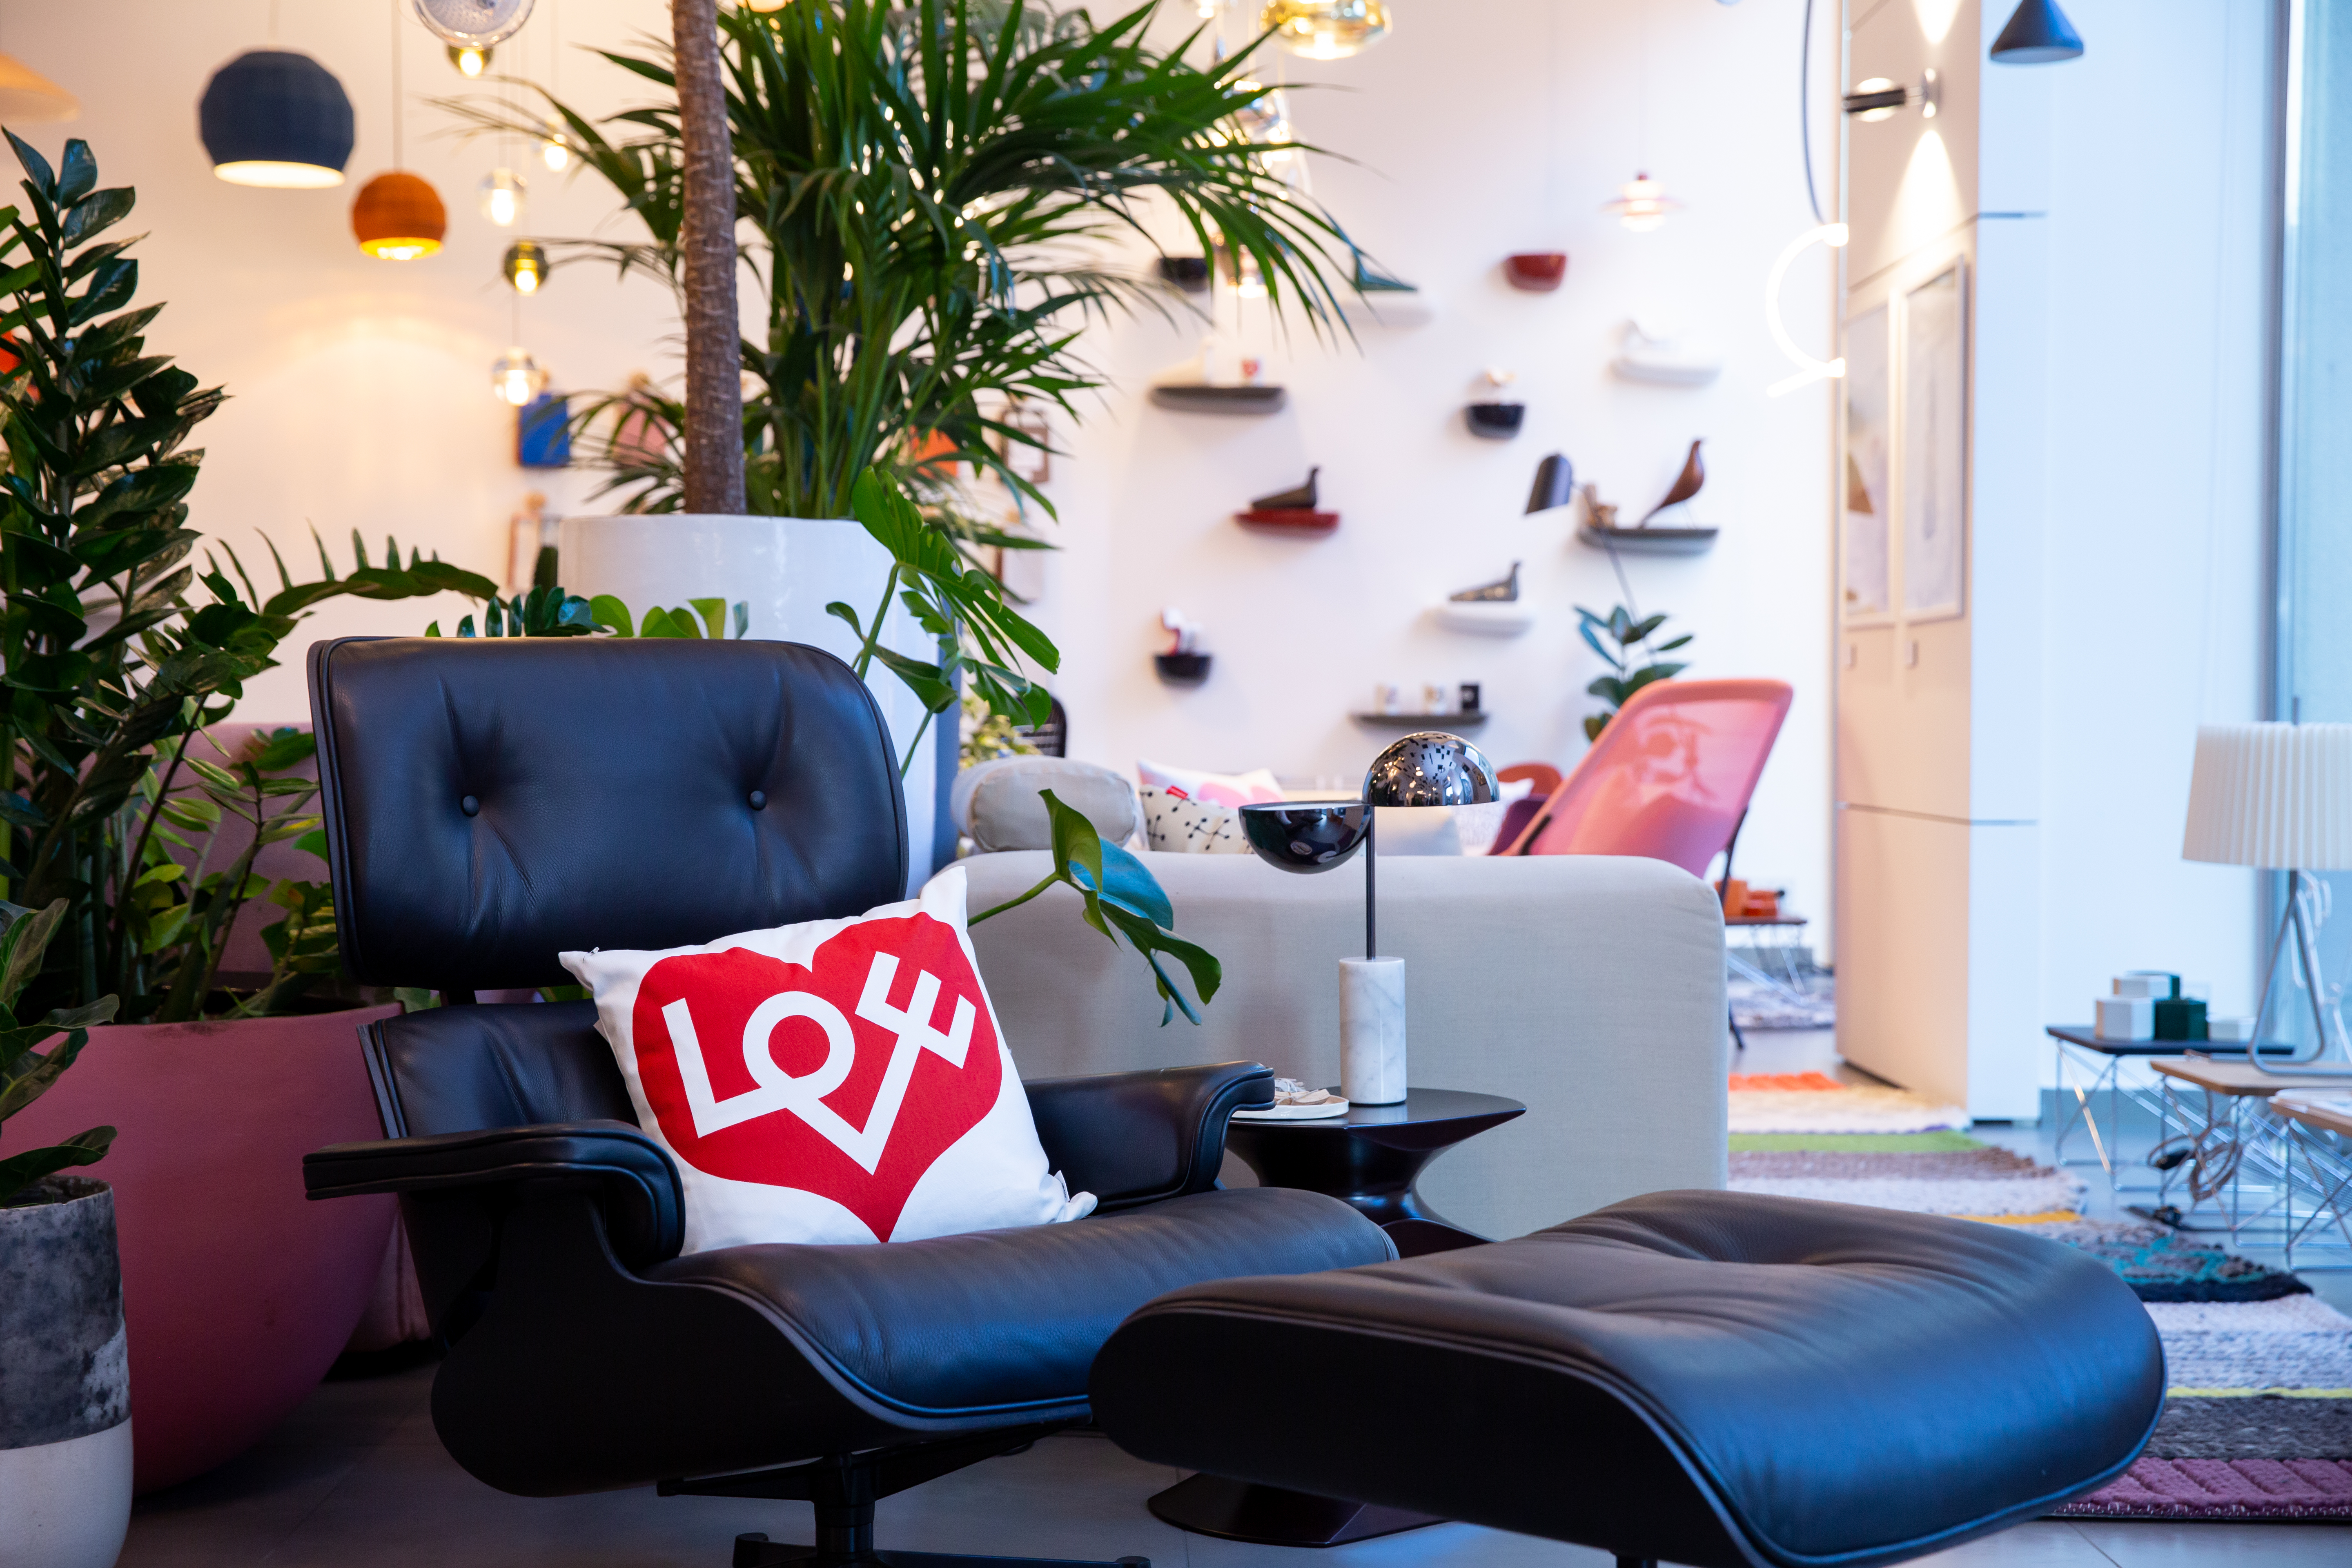 Egy izgalmas márka izgalmas darabjai – Vitra Concept Store nyílt a Solinfóban